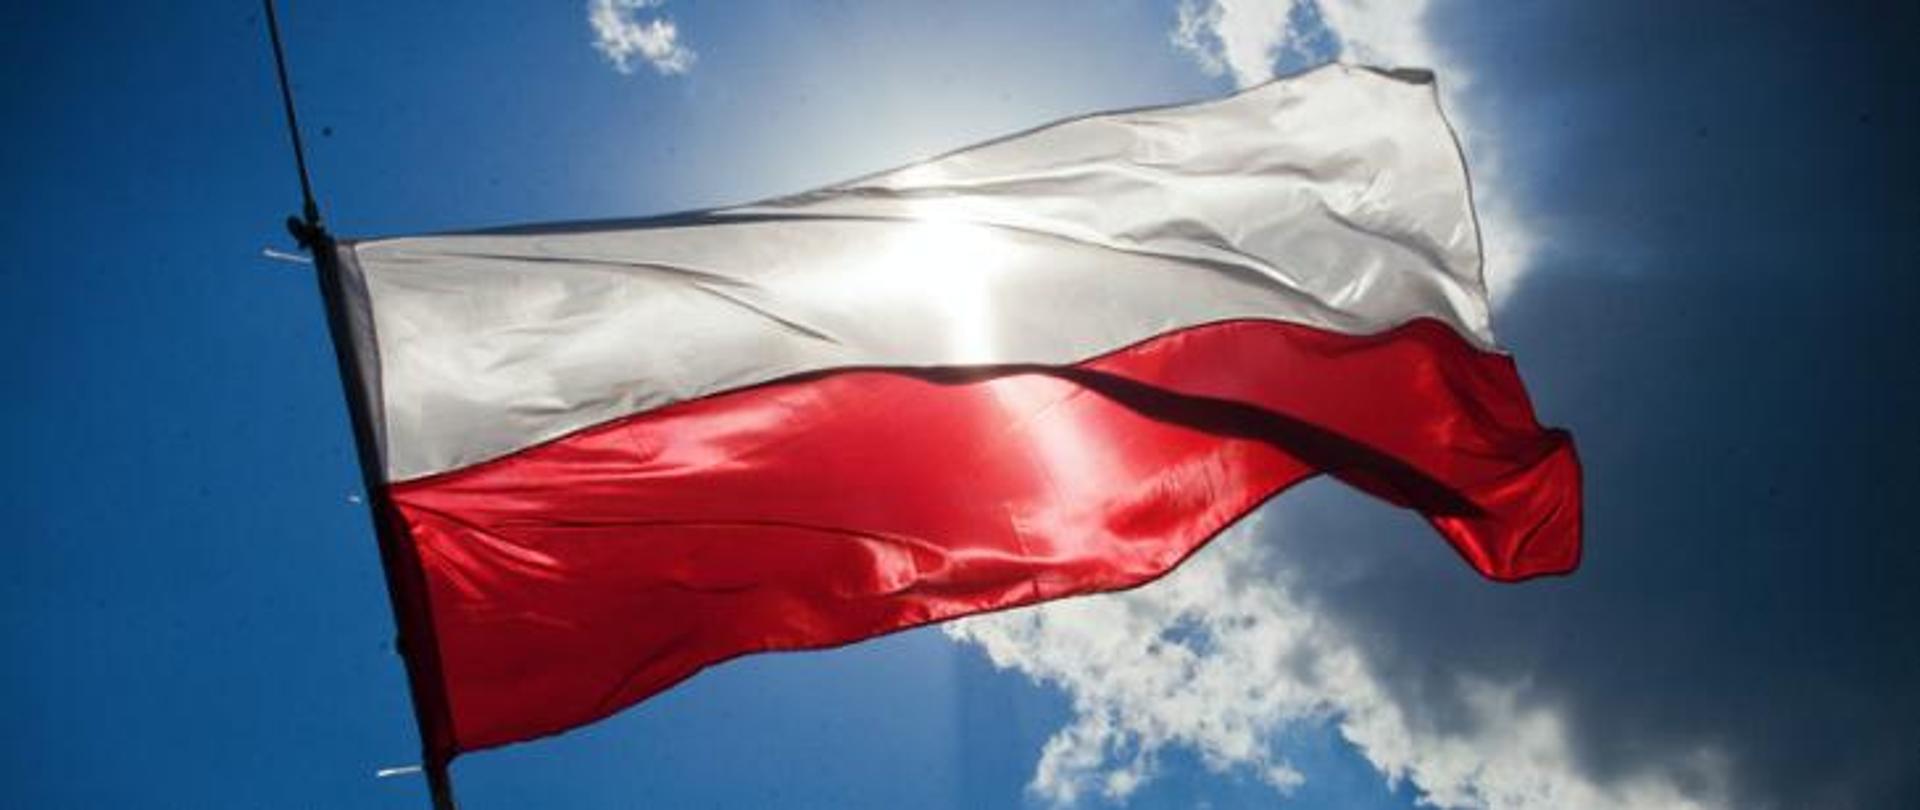 Biało-czerwona flaga Polski na tle błękitnego nieba